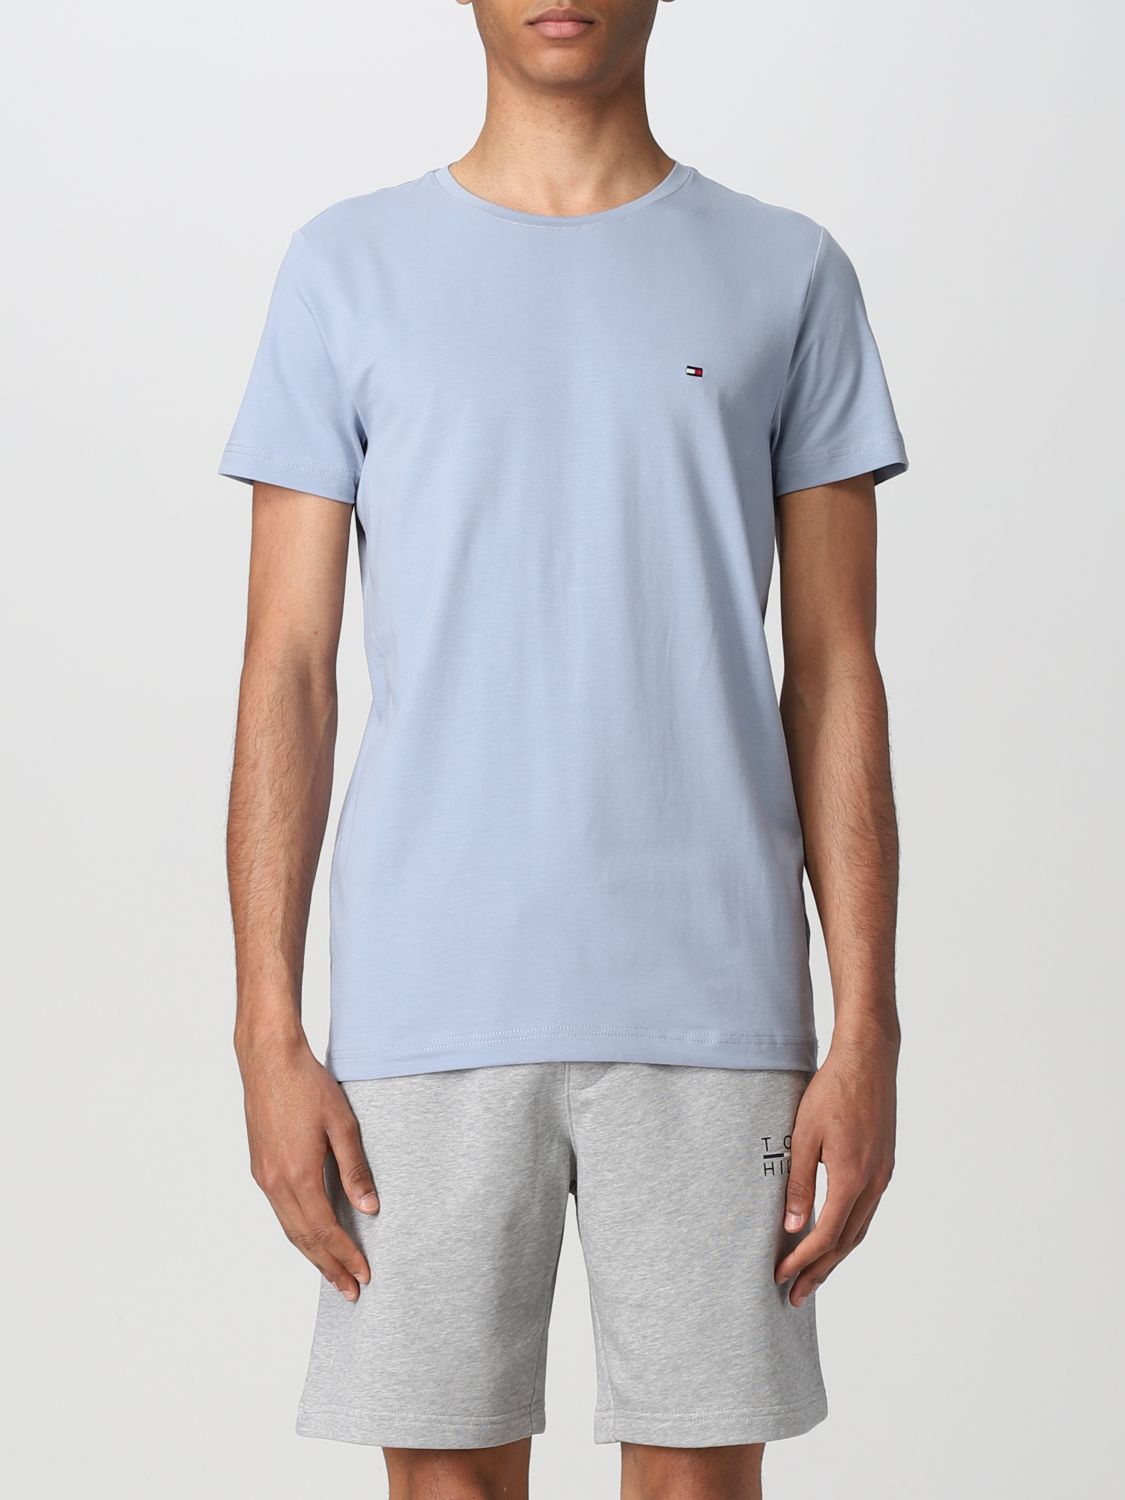 ekstensivt Forbipasserende ego Tommy Hilfiger Outlet: T-shirt men - Blue